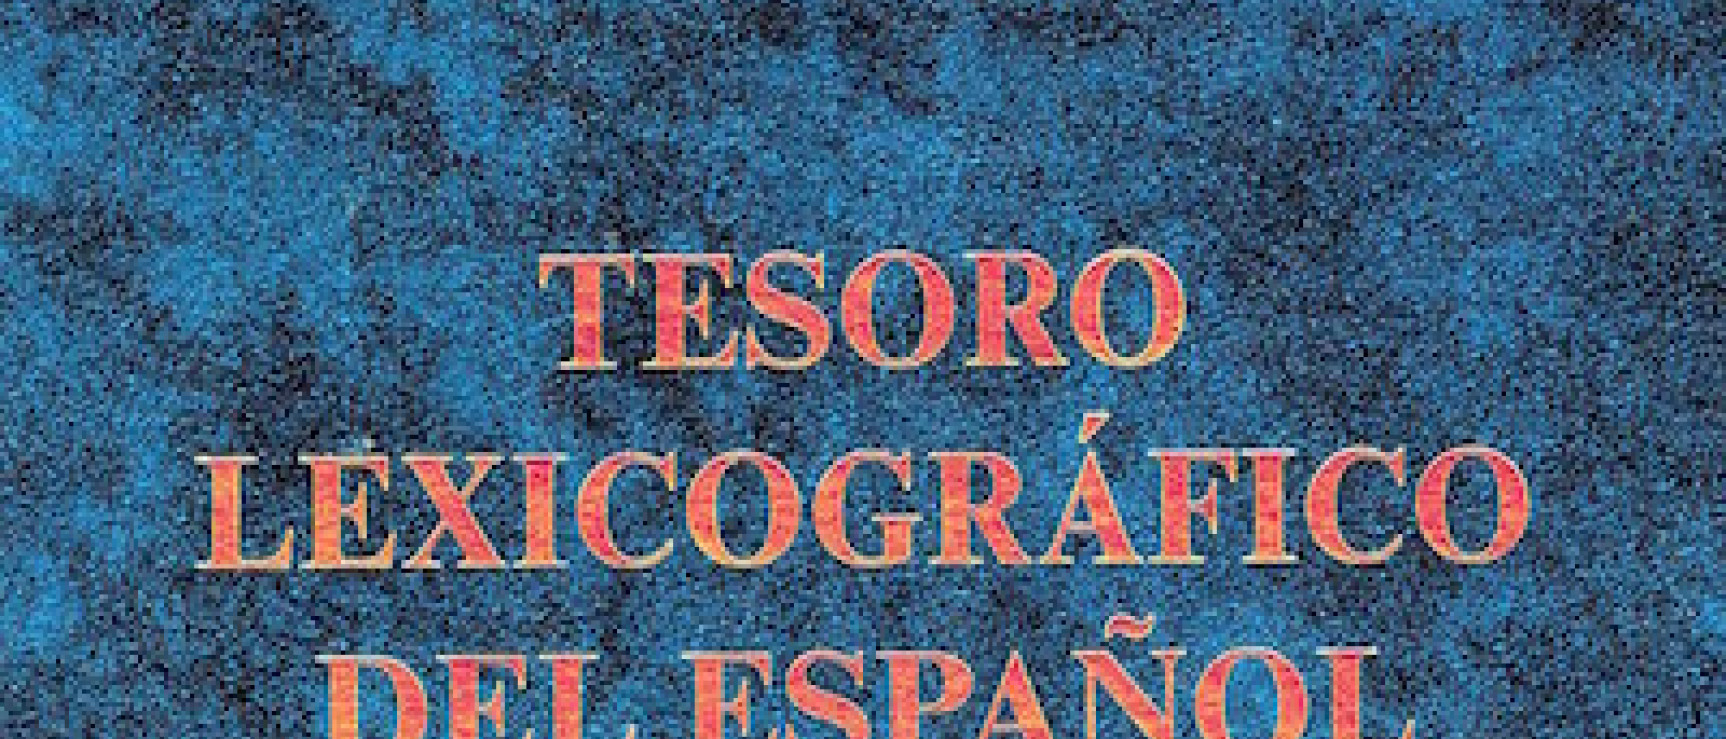 «Tesoro lexicográfico del español de Puerto Rico», de María Vaquero y Amparo Morales (2005).